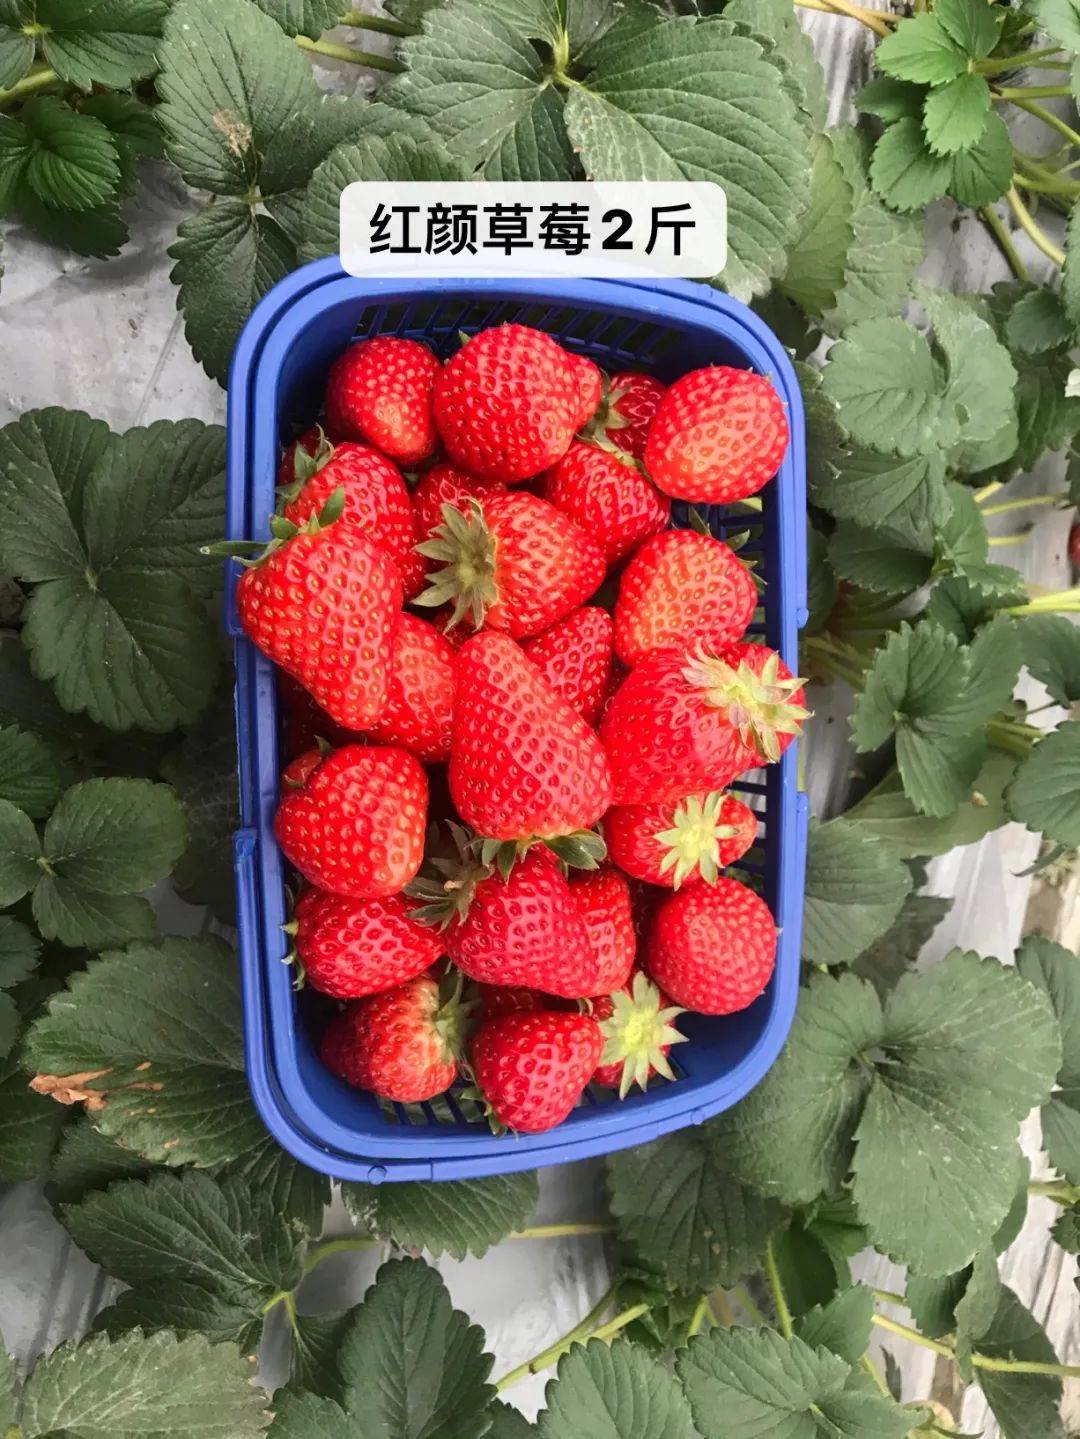 红颜草莓2斤装